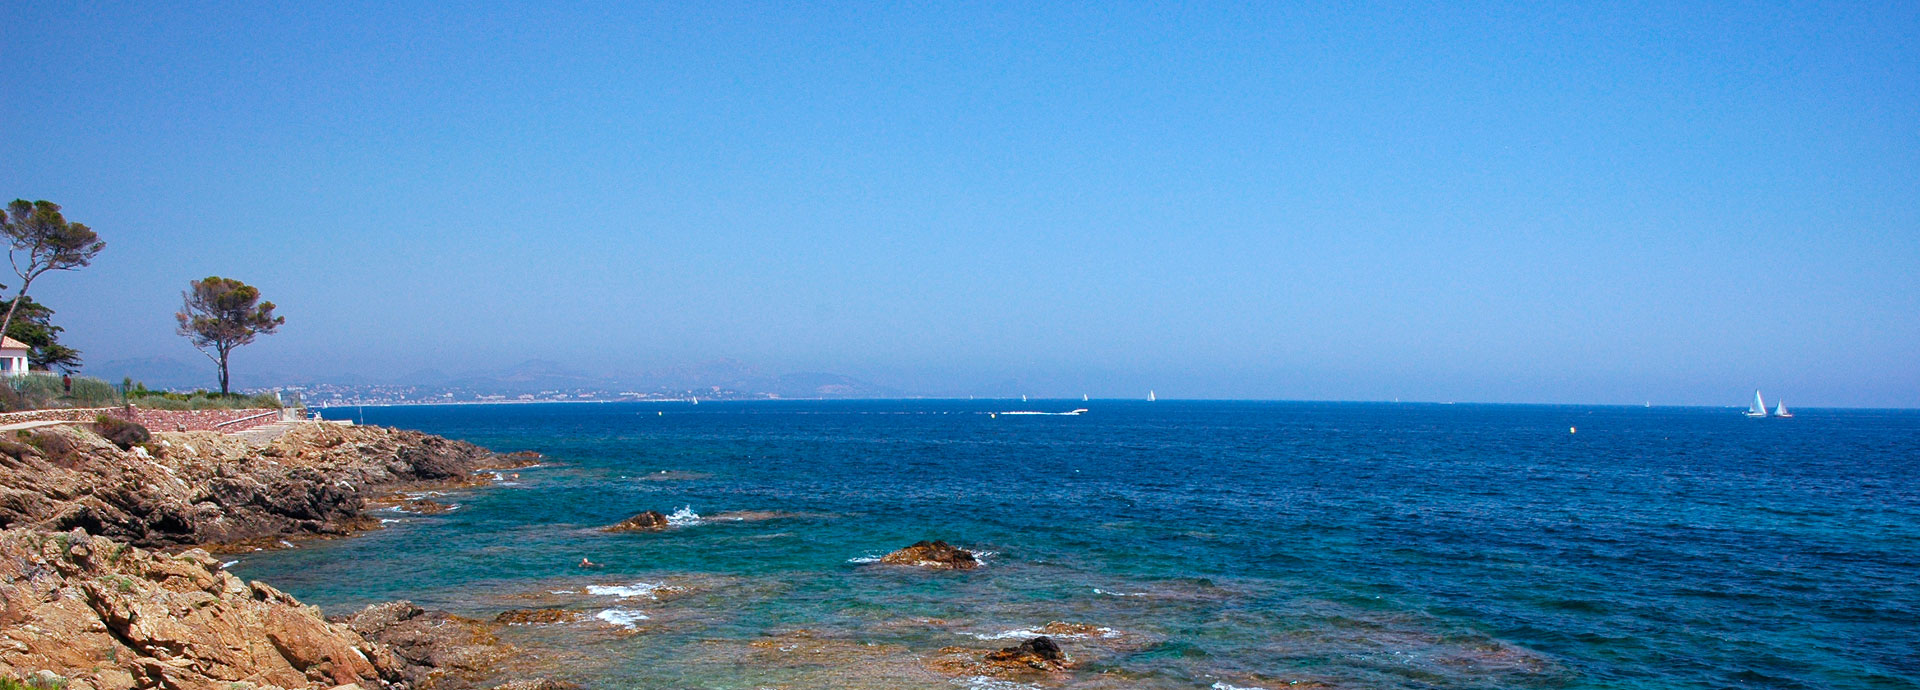 Affitto case vacanza sotto il sole del Mediterraneo: Coralia Vacances